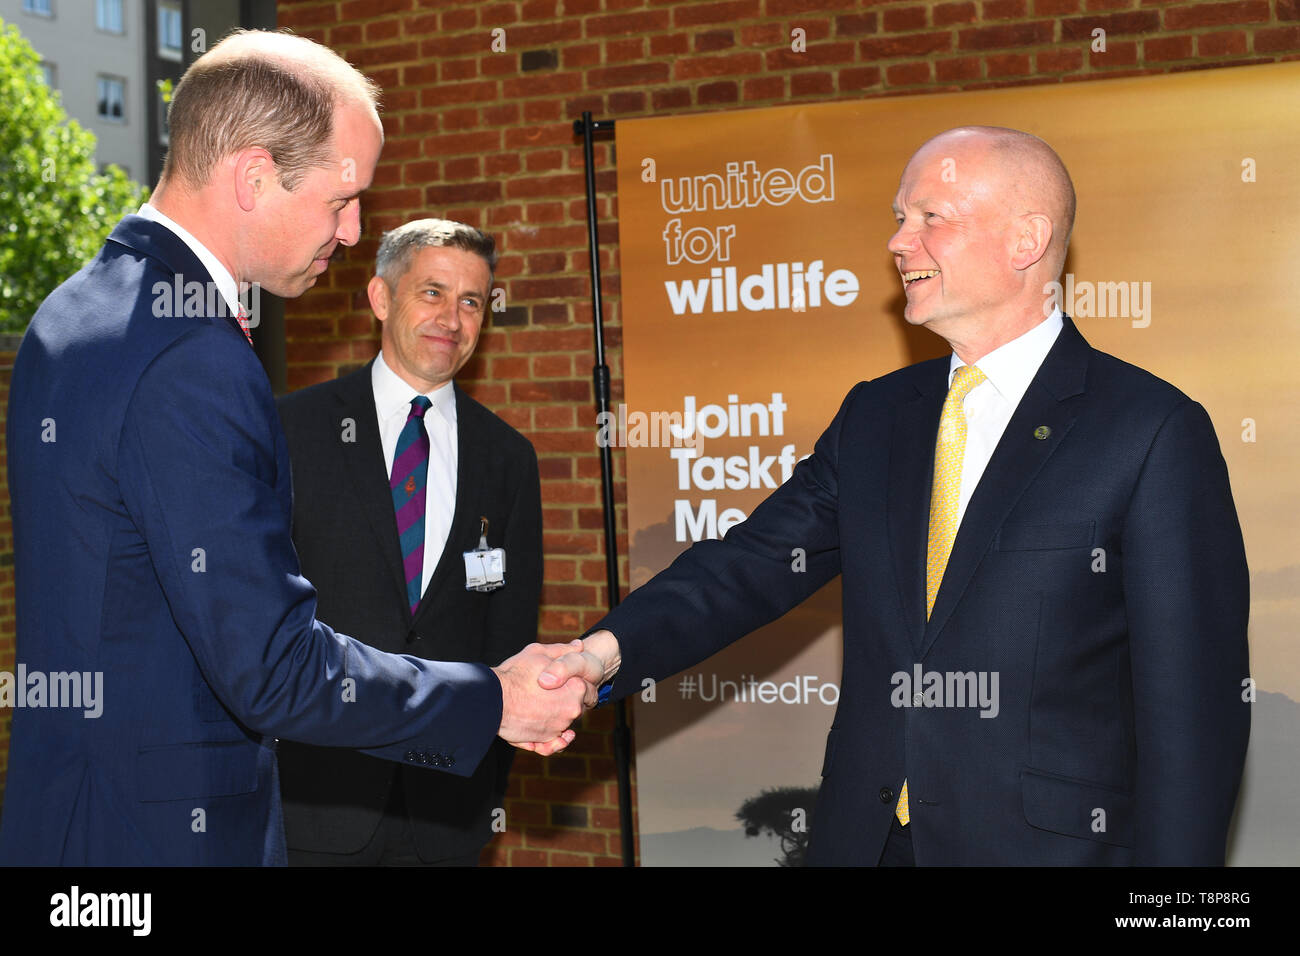 Bildunterschrift Korrektur der Herzog von Cambridge und William Hague an einem United für die Tierwelt Joint Task Force Sitzung an der Royal Geographical Society in London. Stockfoto